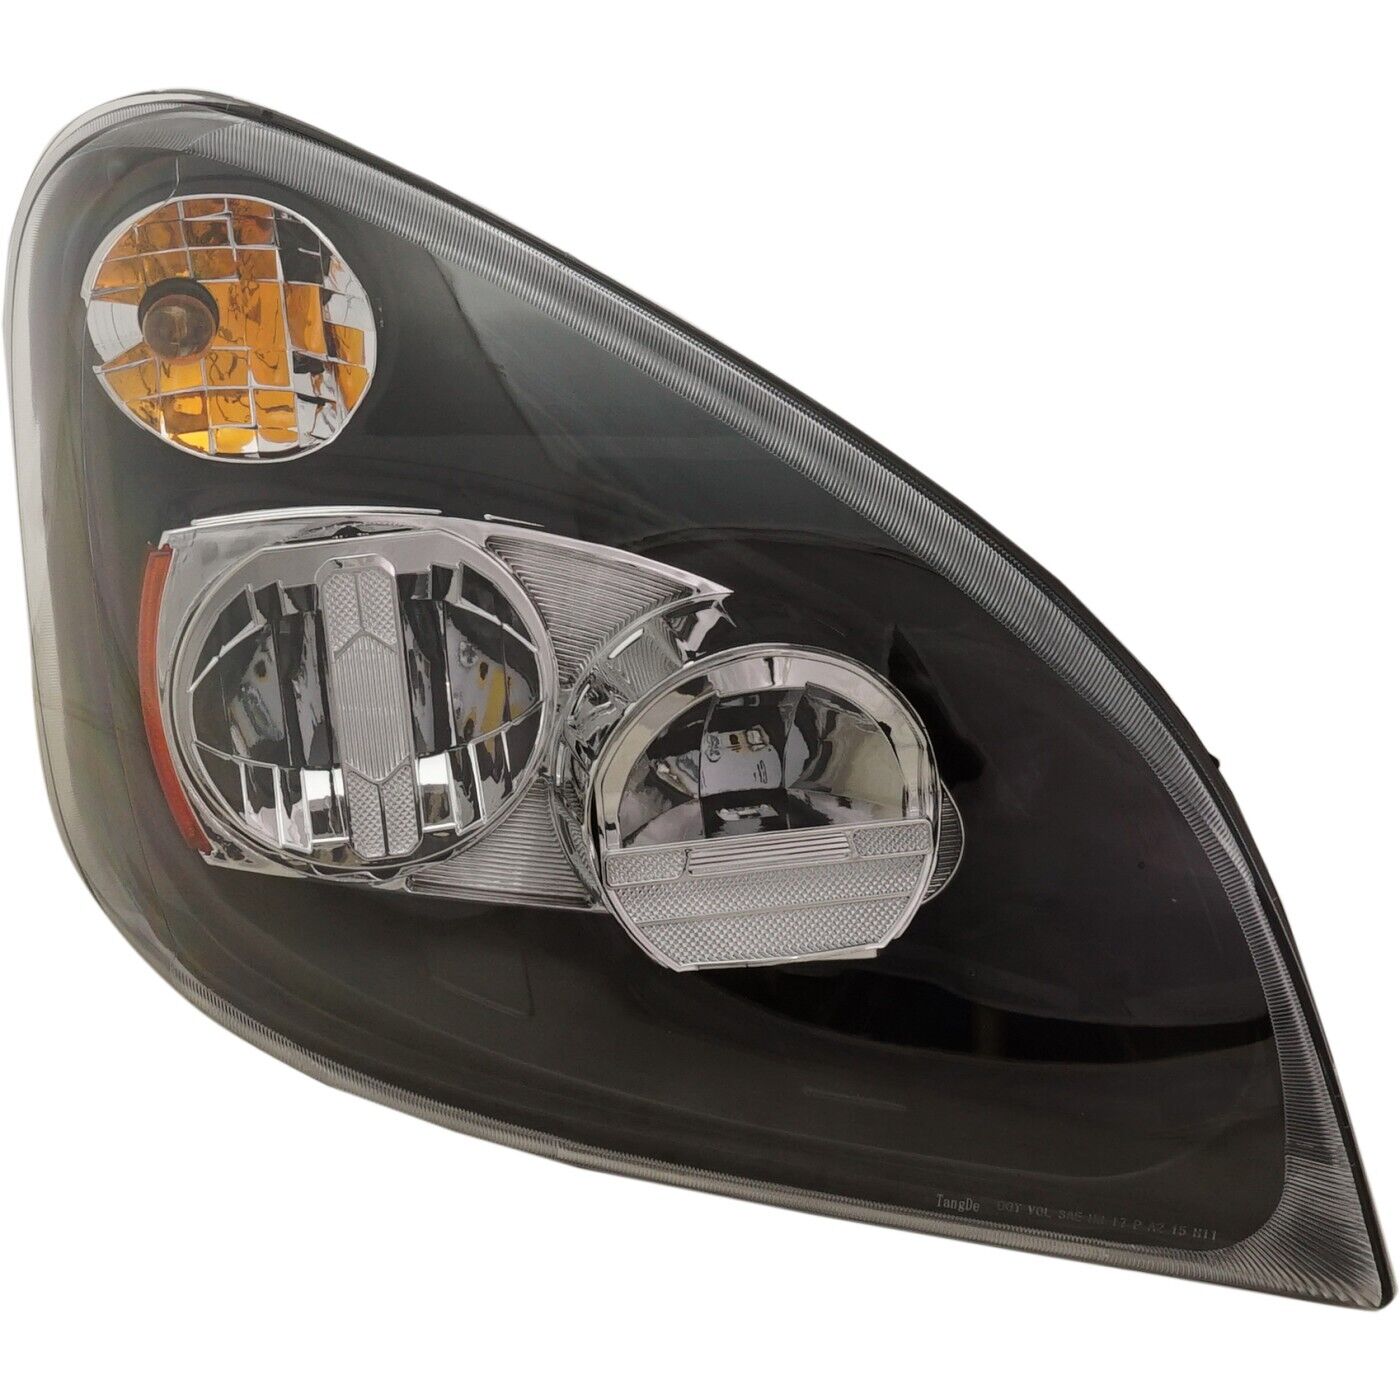 LED Headlight For 2008-2017 Freightliner Cascadia Right Chrome